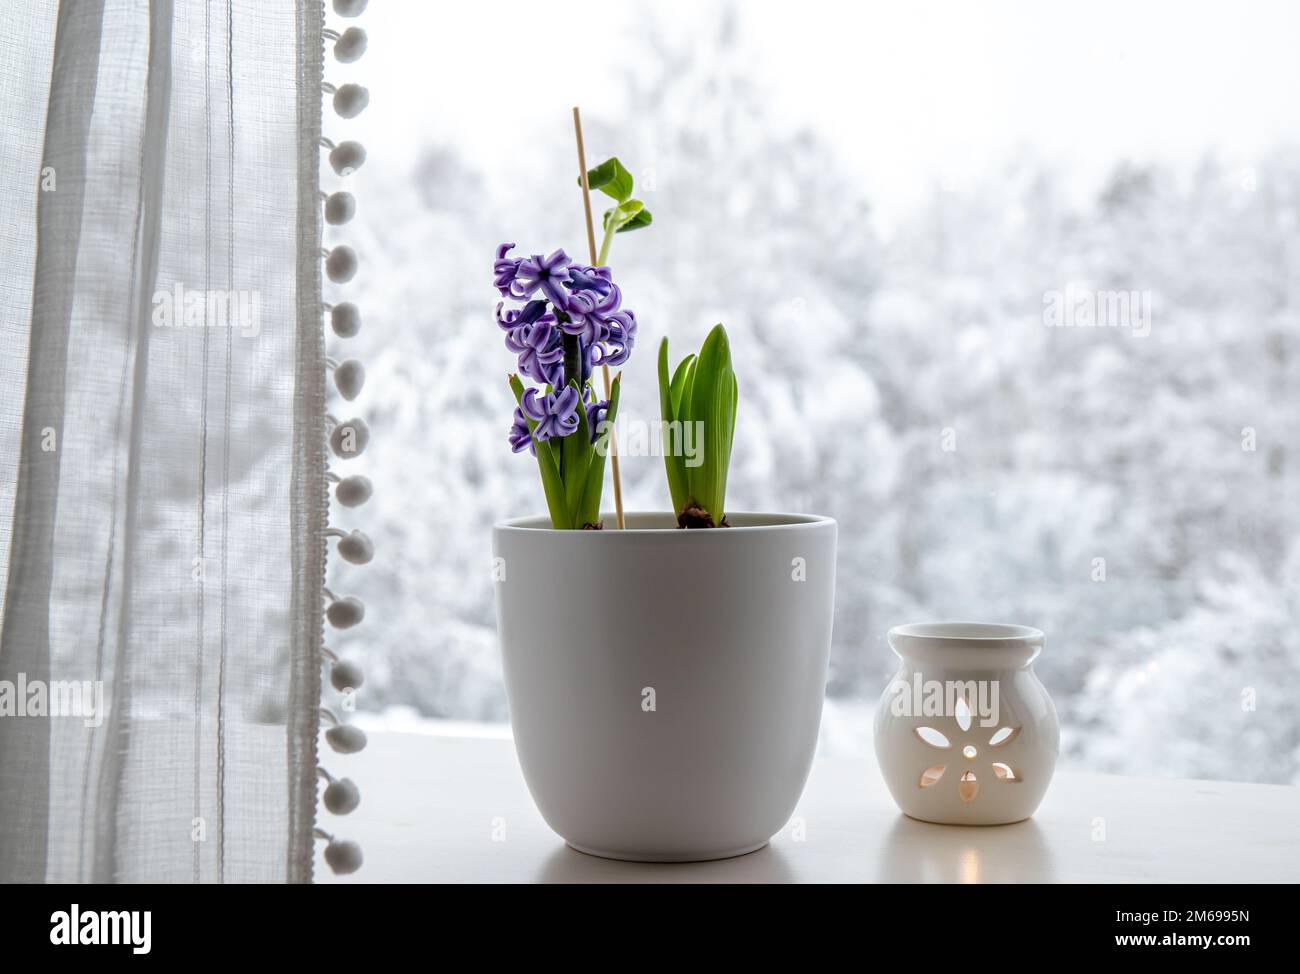 Giacinti Hyacintus orientalis cresce e fiorisce in casa nel mese di gennaio. Fiori in fiore sul davanzale della finestra di casa all'interno del vaso di fiori bianchi. Alberi innevati. Foto Stock